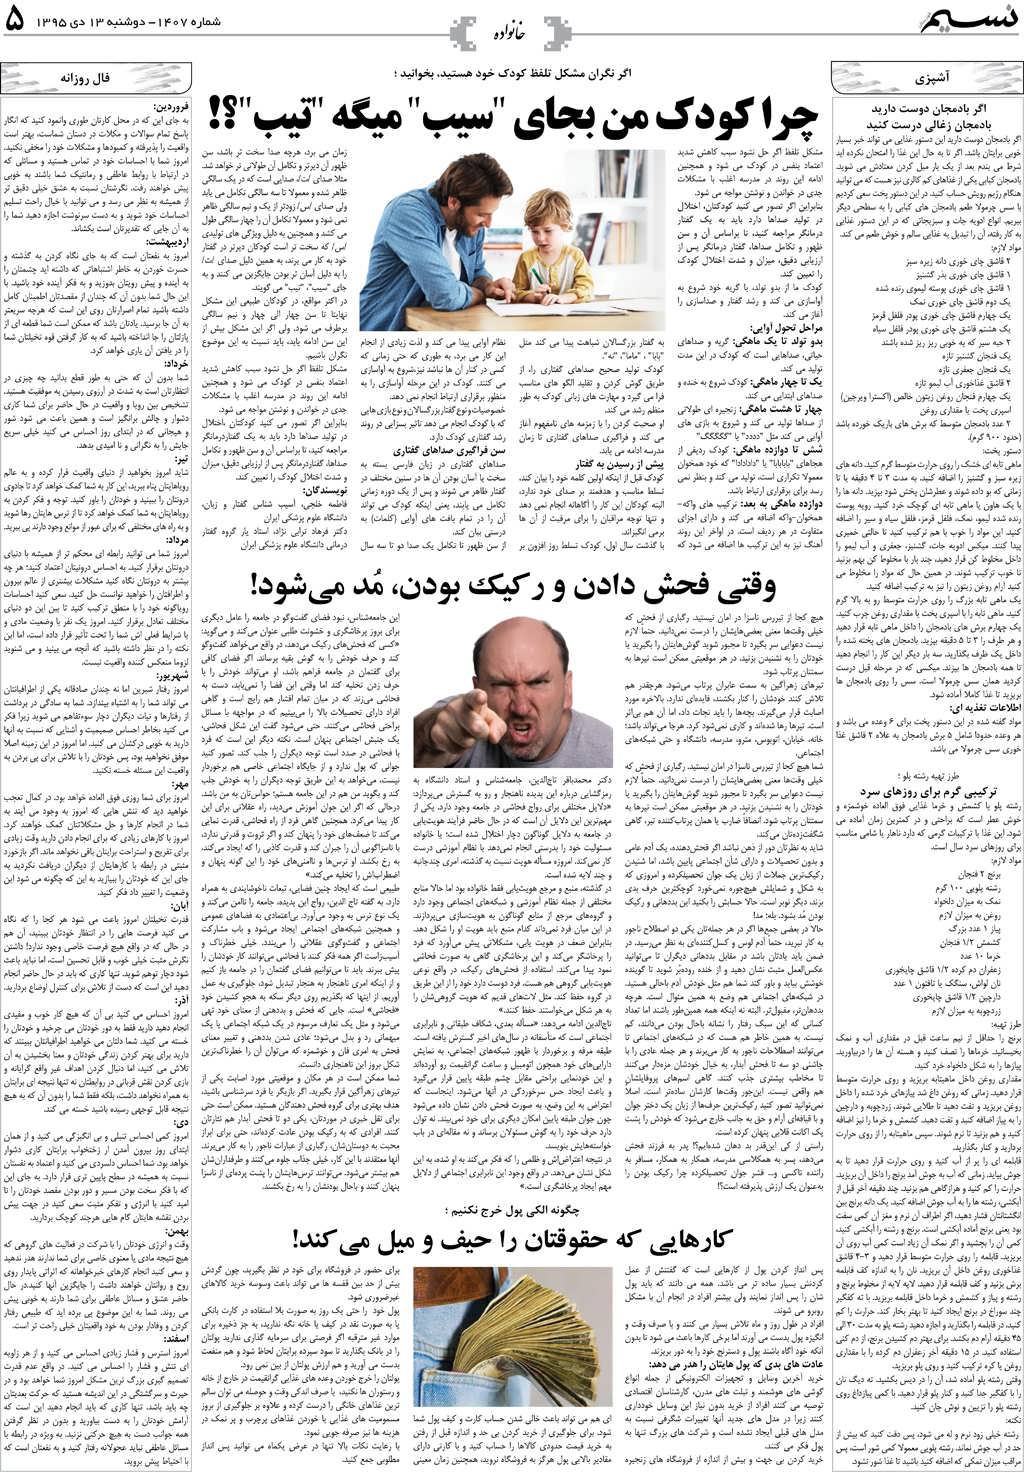 صفحه خانواده روزنامه نسیم شماره 1407